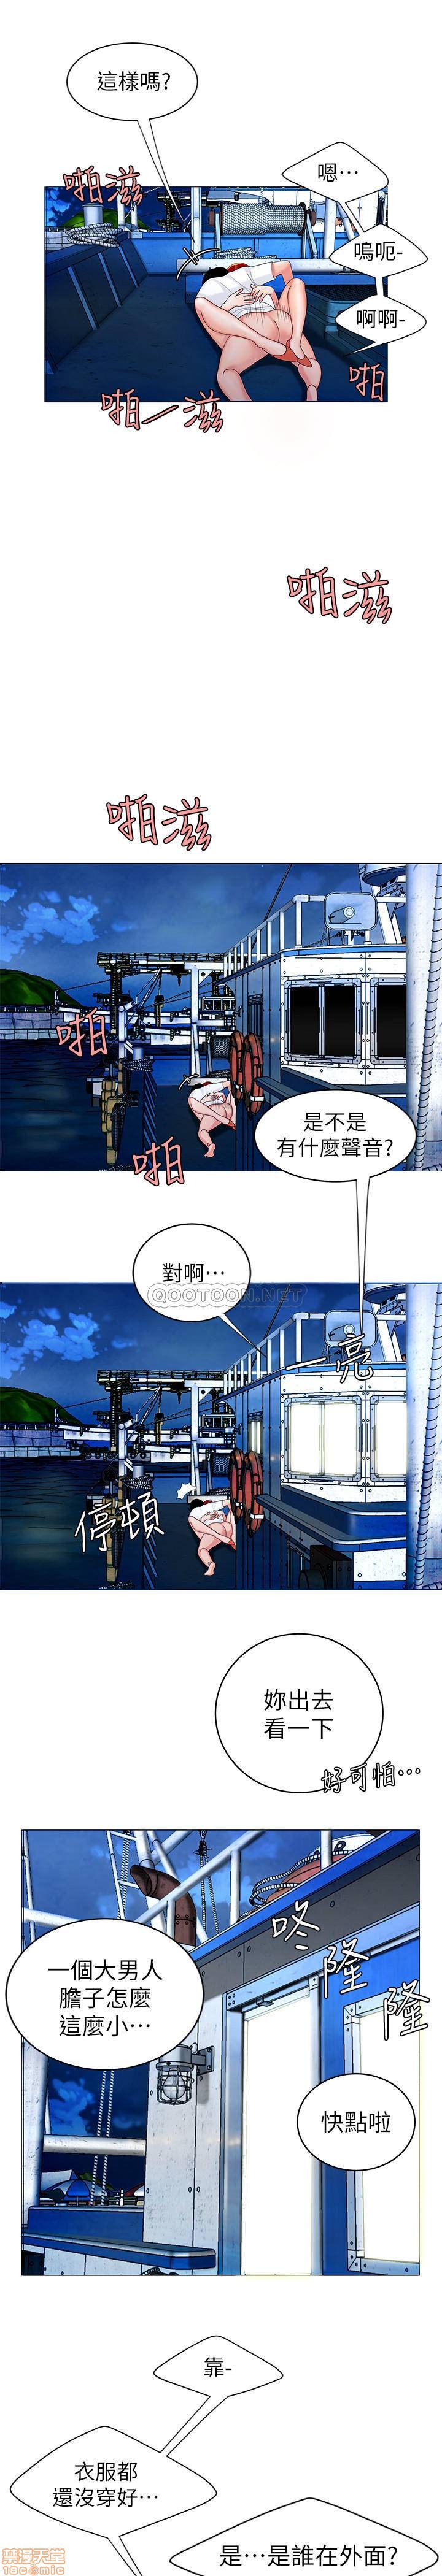 《幸福外送员》漫画 第7话 - 乌耳岛码头最棒的风景